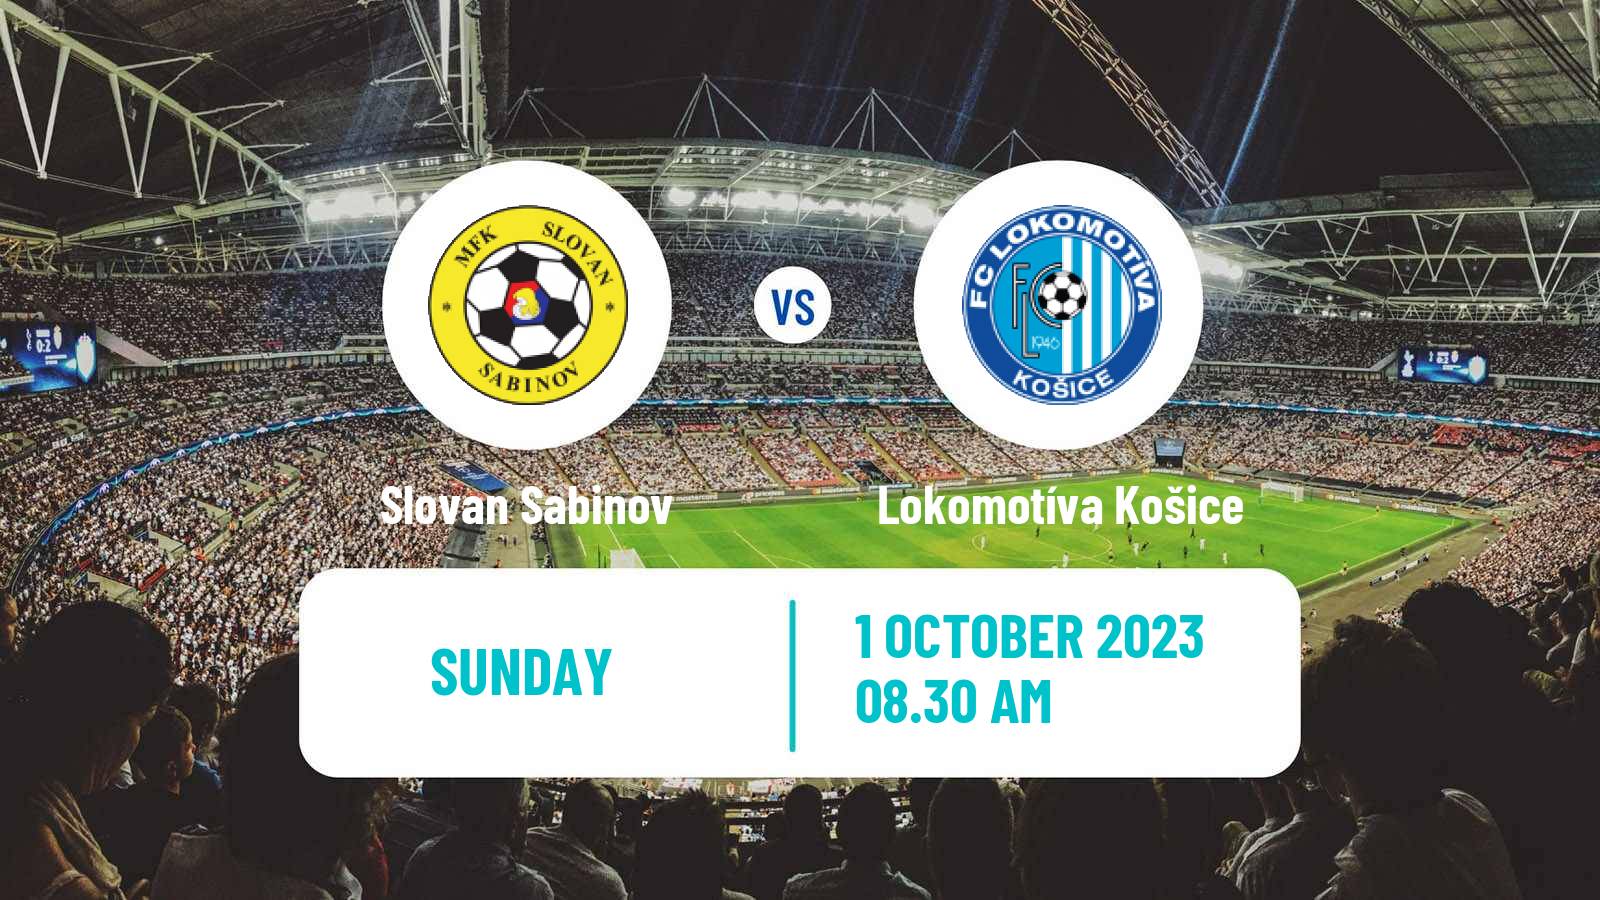 Soccer Slovak 4 Liga East Slovan Sabinov - Lokomotíva Košice